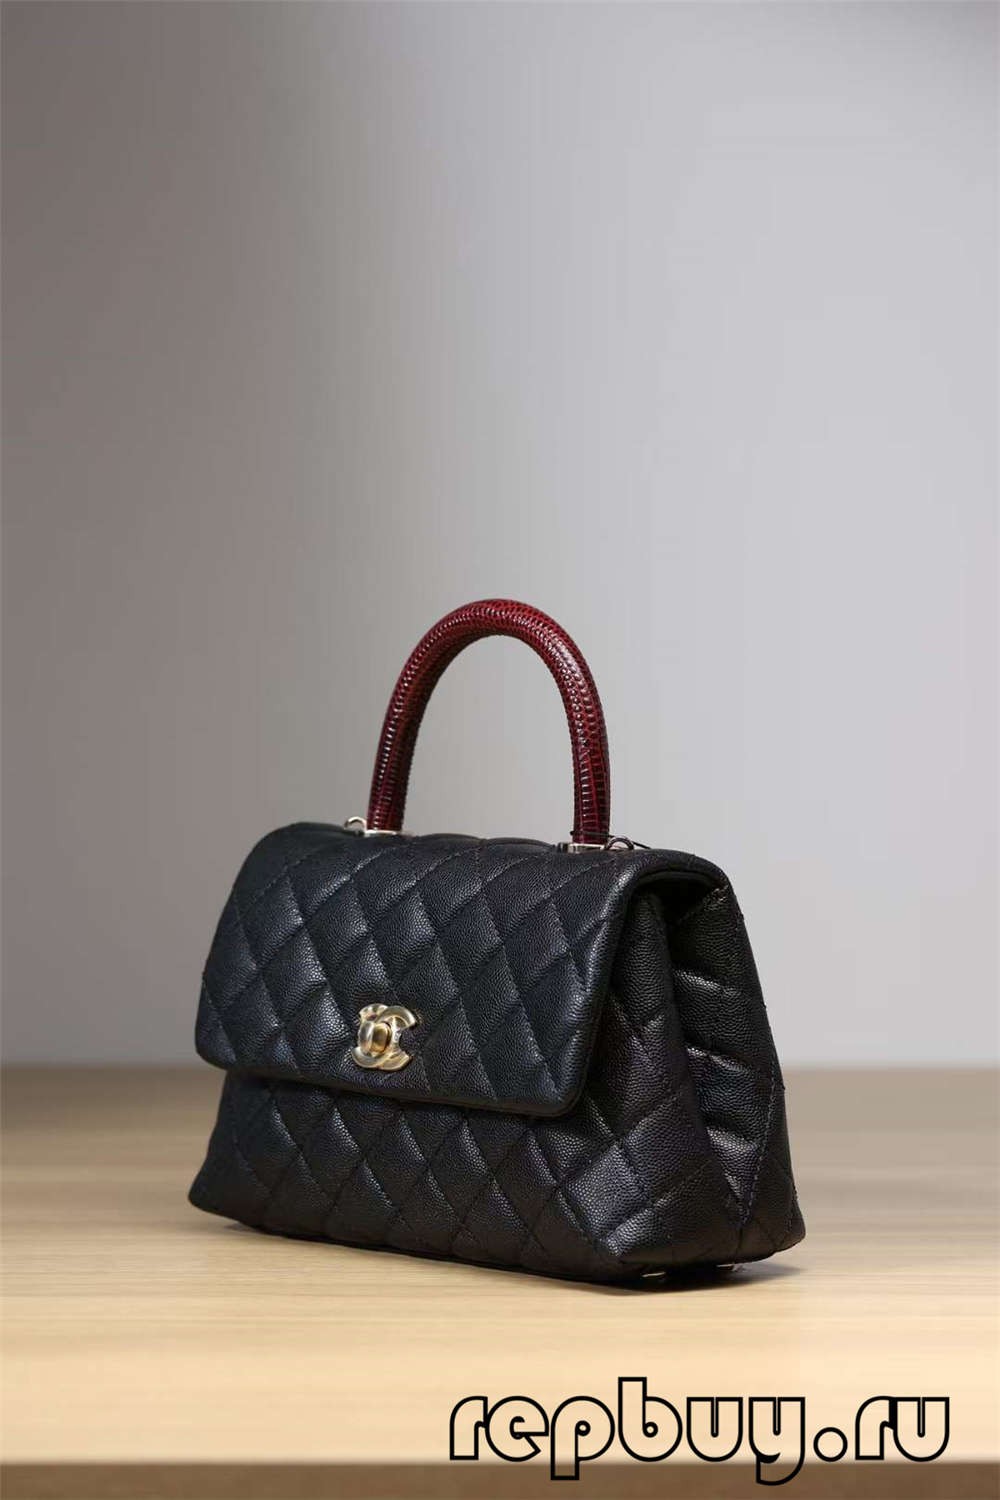 Chanel Coco Handle top replica handbags black gold buckle (2022 Edition )-Best Quality Fake designer Bag Review, Replica designer bag ru